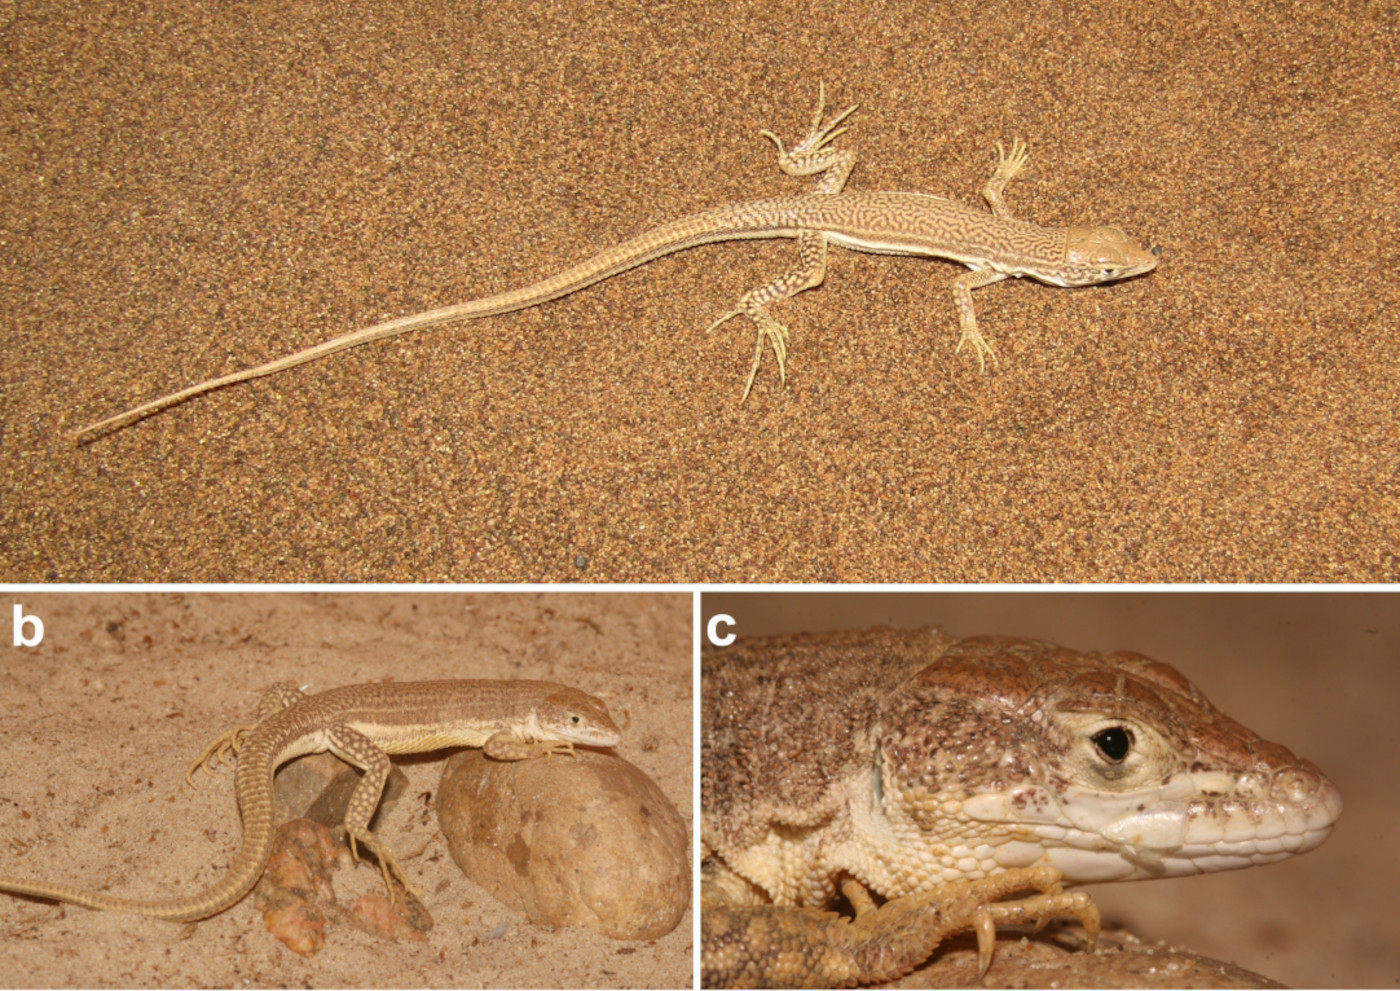 Deux nouvelles espèces de lézards découvertes dans les dunes de sable de l’Iran